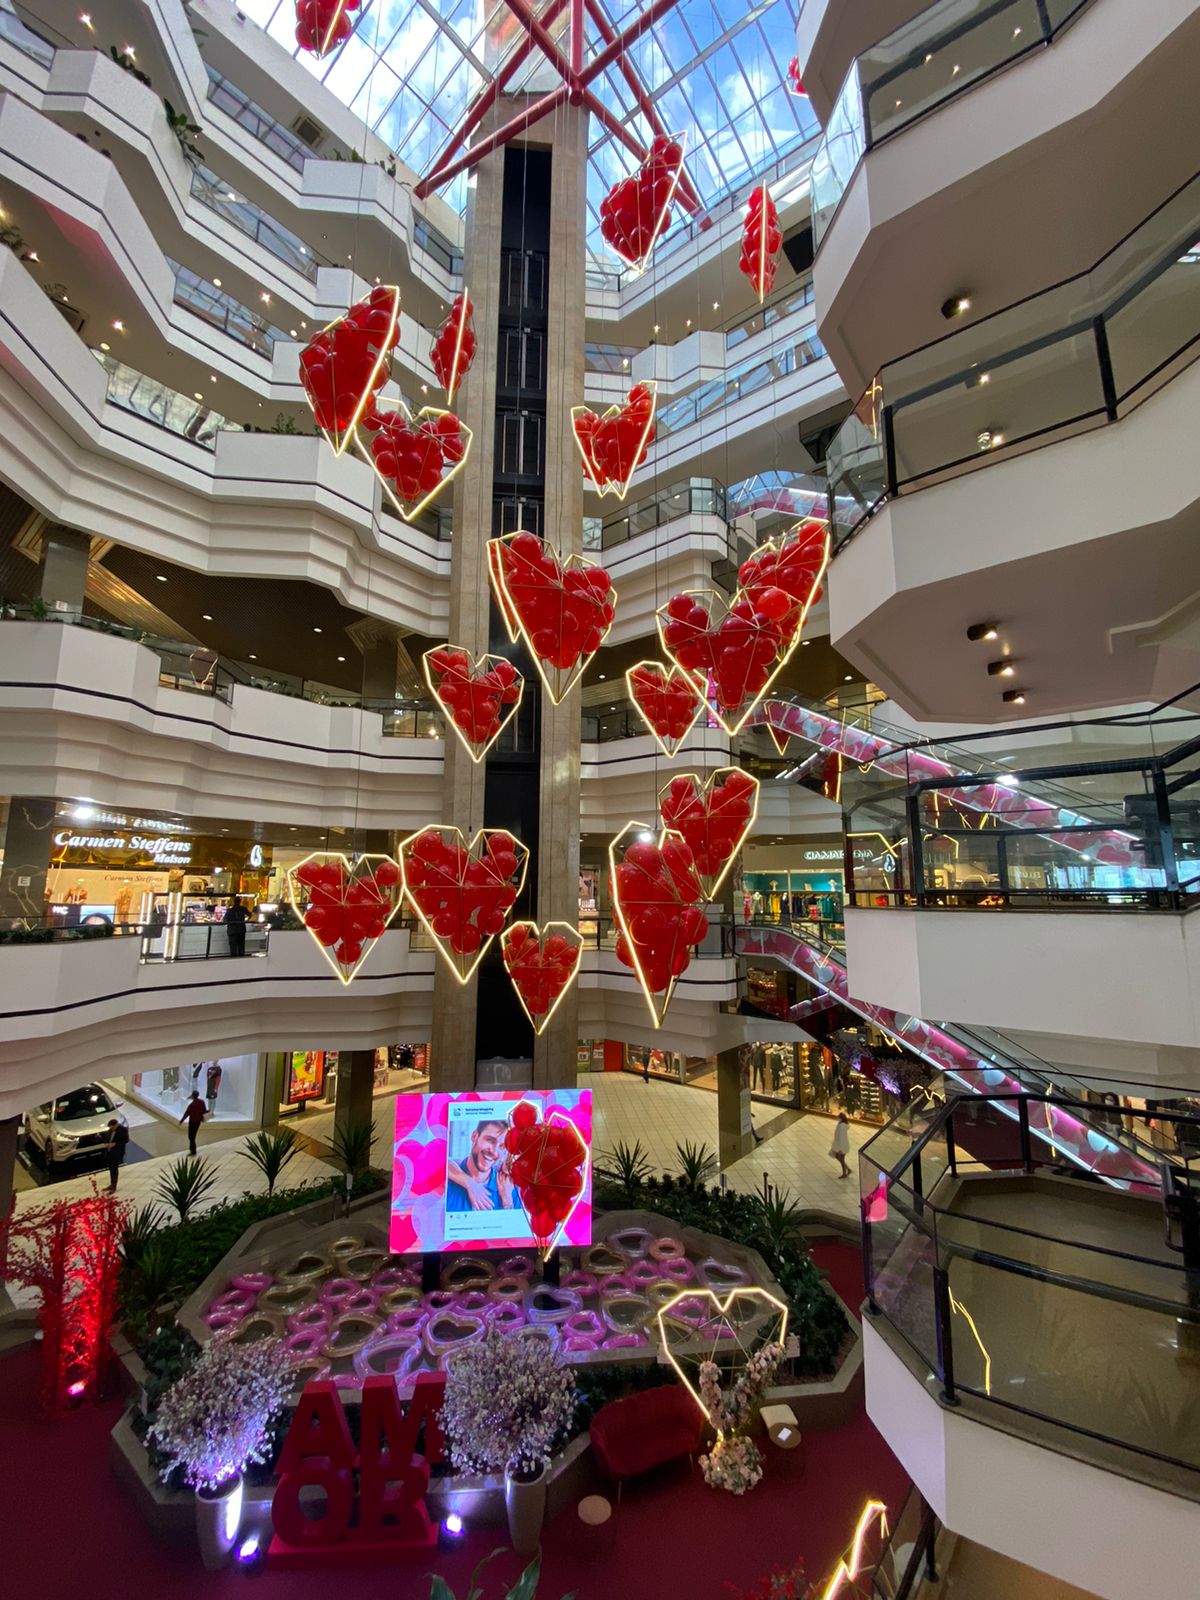 Beiramar Shopping de Florianópolis cria espaço instagramavel e concurso cultural para o Dia dos Namorados